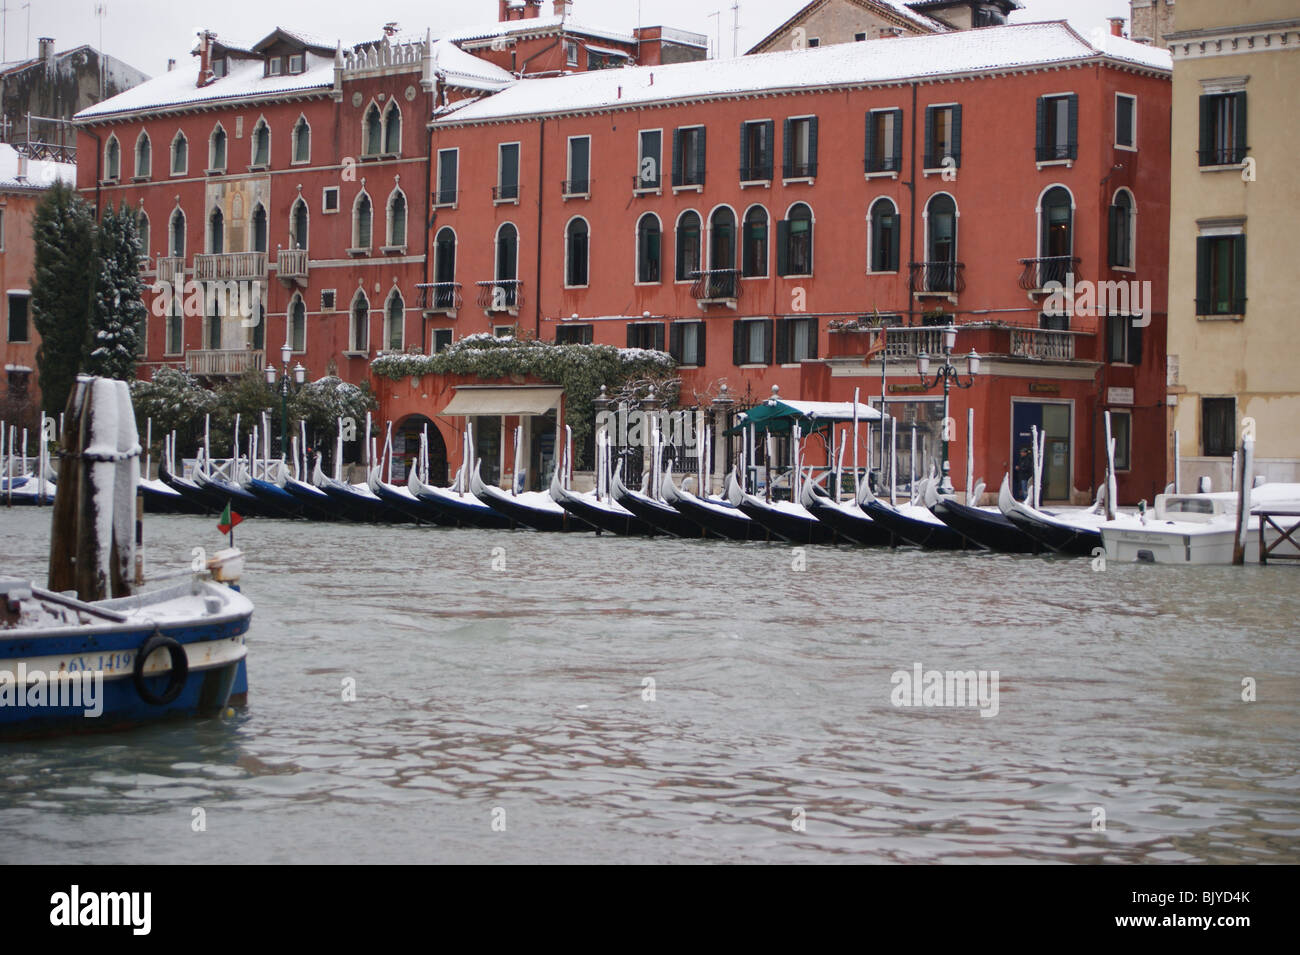 Venezia nella neve - gondole, Canal Grande Foto Stock